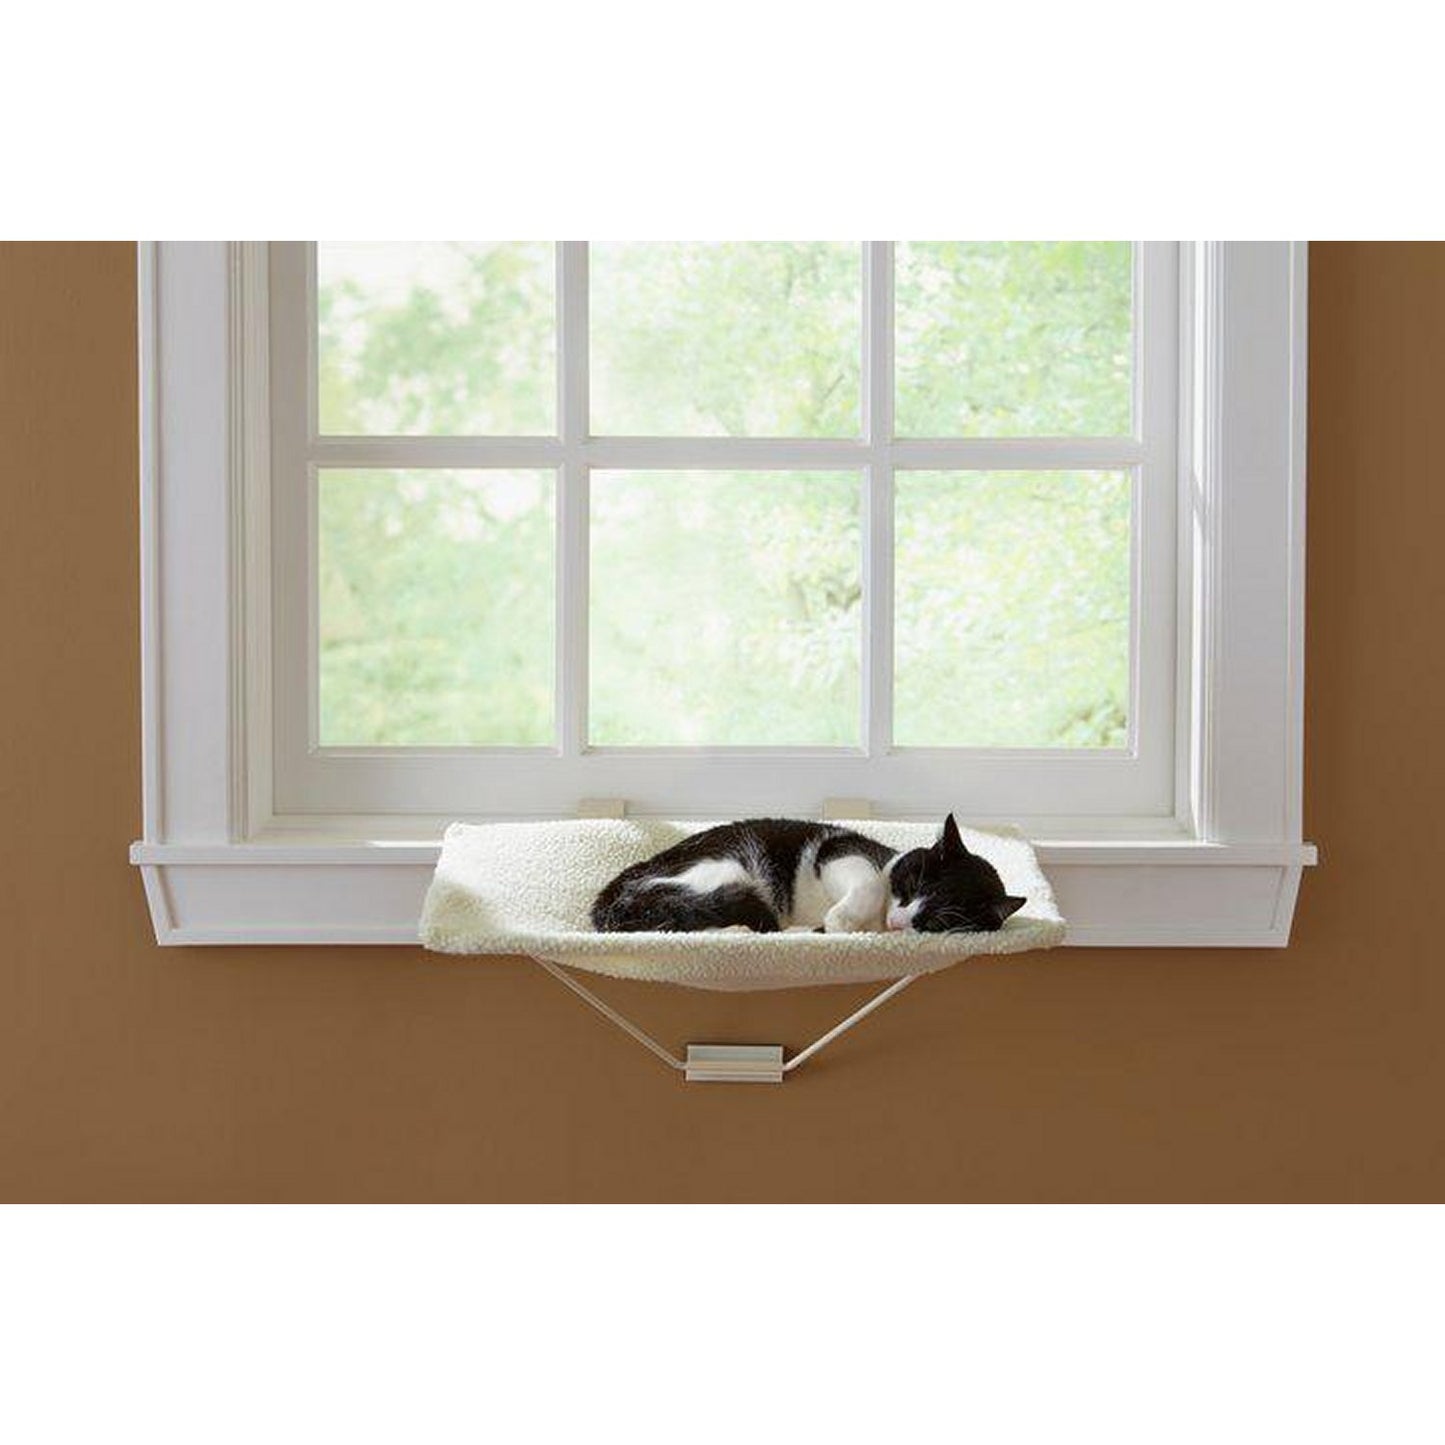 Prevue Pet Products Tabbynapper Cat Window Seat